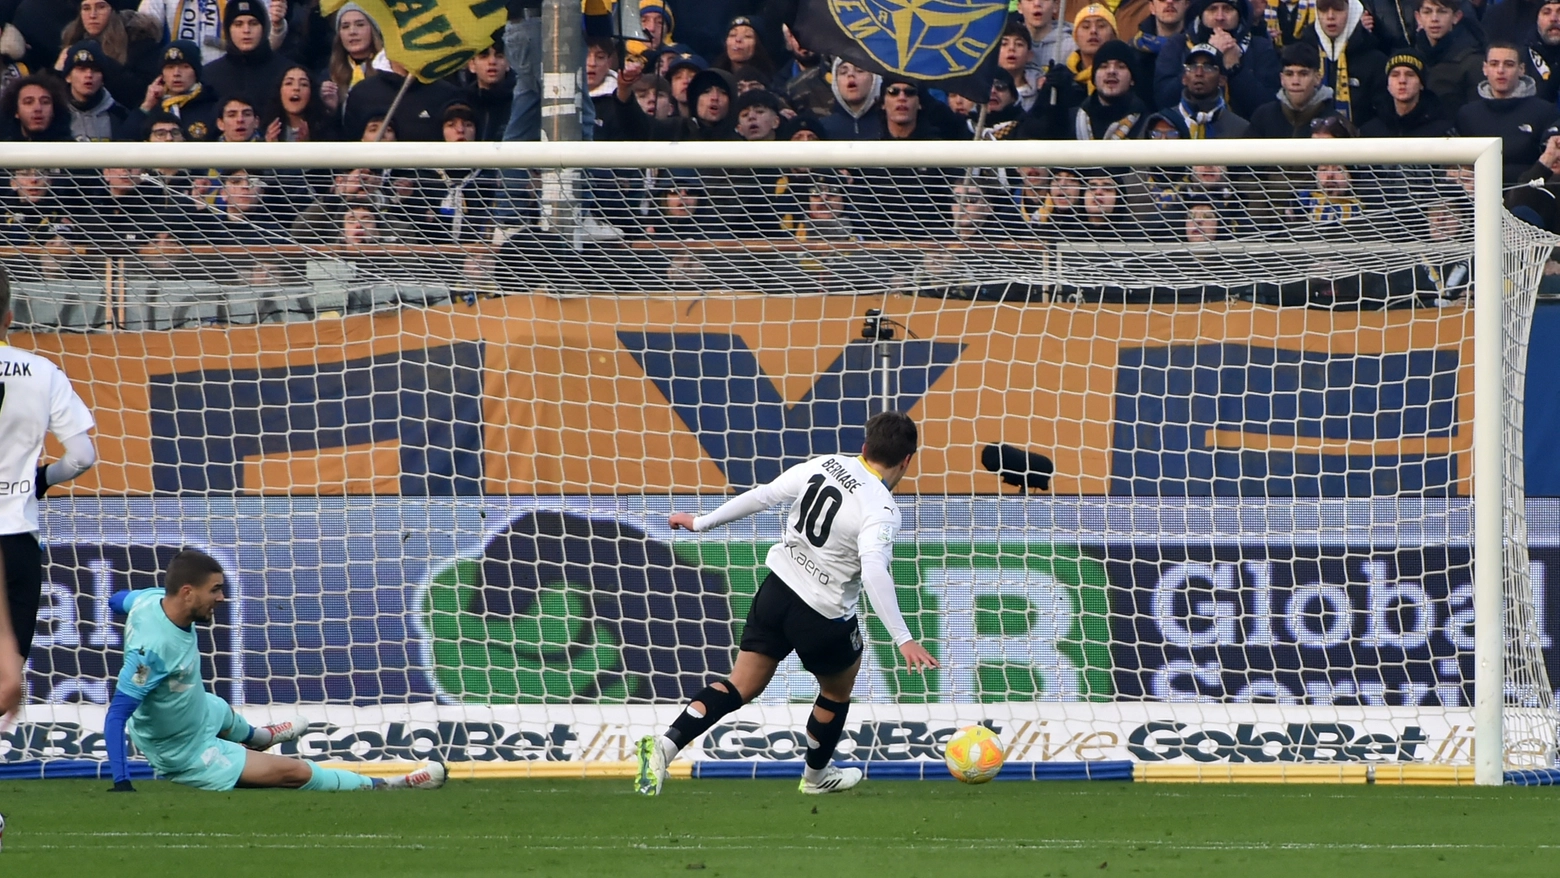 Arriva il primo verdetto dell'anno dalla Serie B: il Parma ne rifila 4 al Lecco e lo condanna alla C. Pareggi tra Samp e Como e Brescia Spezia, mentre la Reggiana piazza il colpo a Palermo e si avvicina alla salvezza.